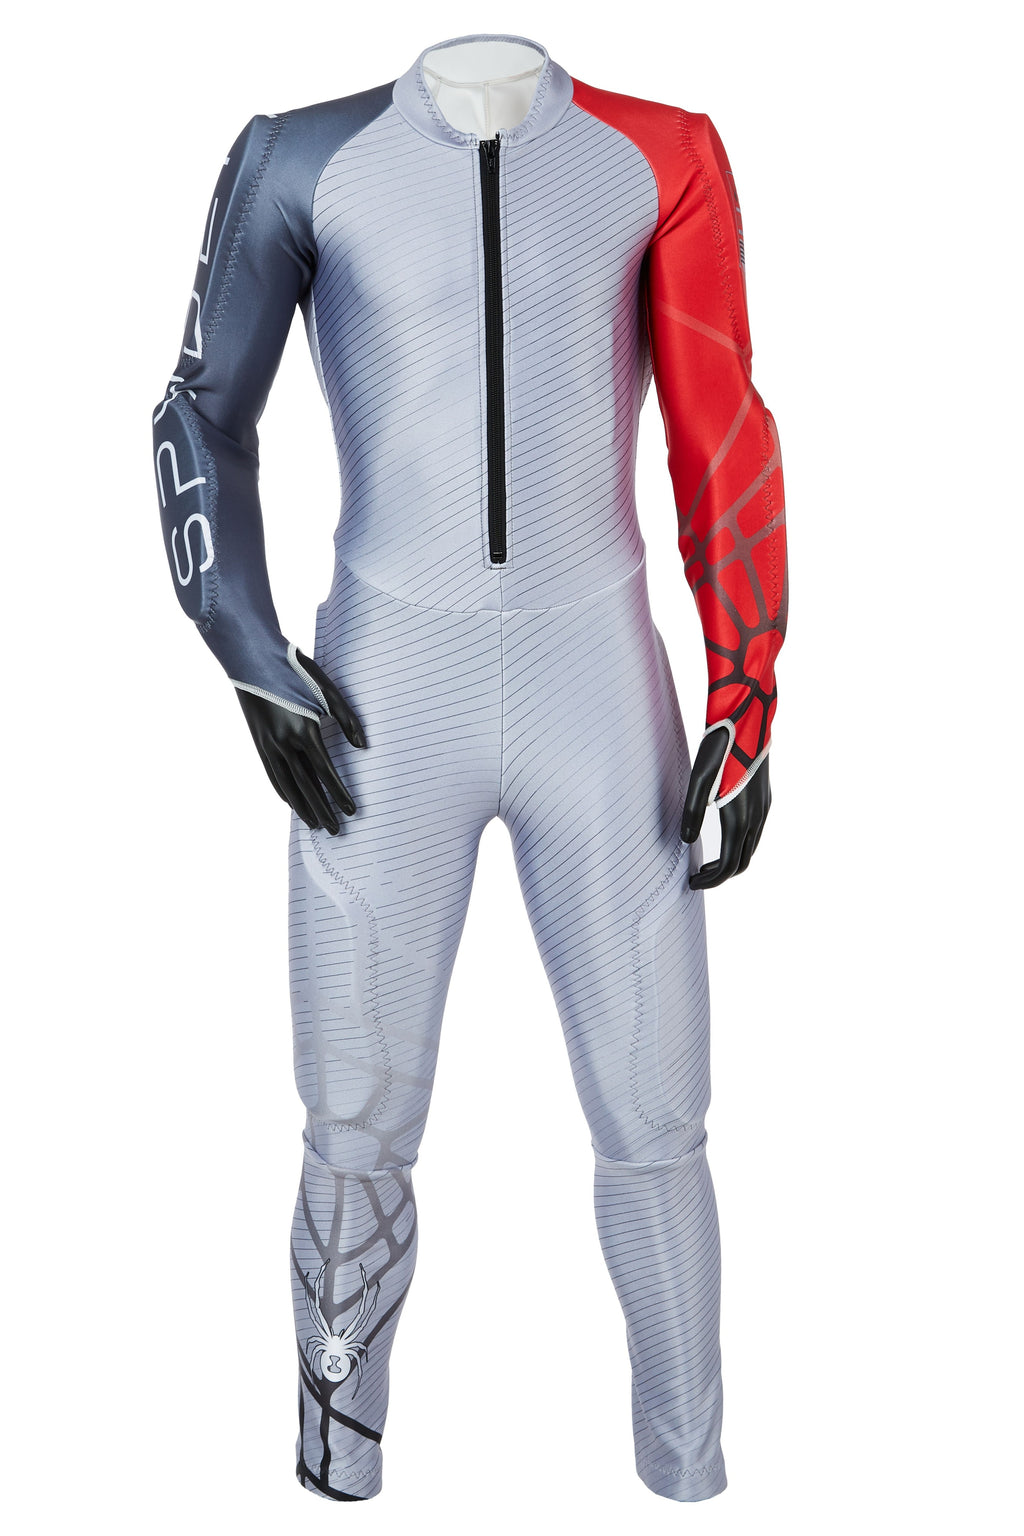 Гоночный костюм Spyder Performance GS. Гоночный костюм Spyder Performance GS Race Suit. Спусковой комбинезон Spyder. Гоночный костюм Spyder Nine Ninety.